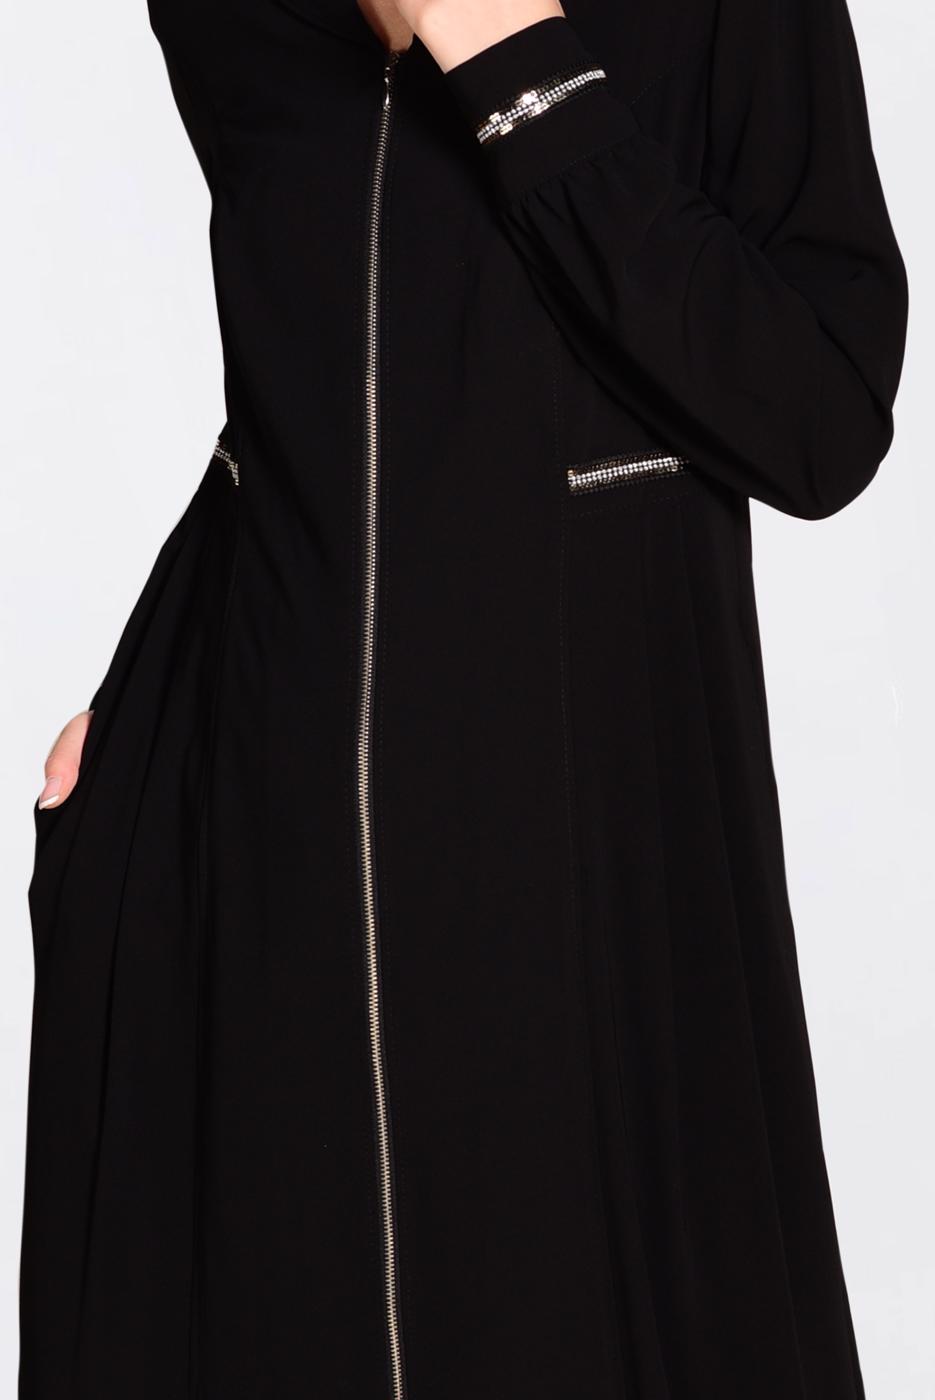 Zippered and Pocketed Woman Hijab Abaya | ALVİNA